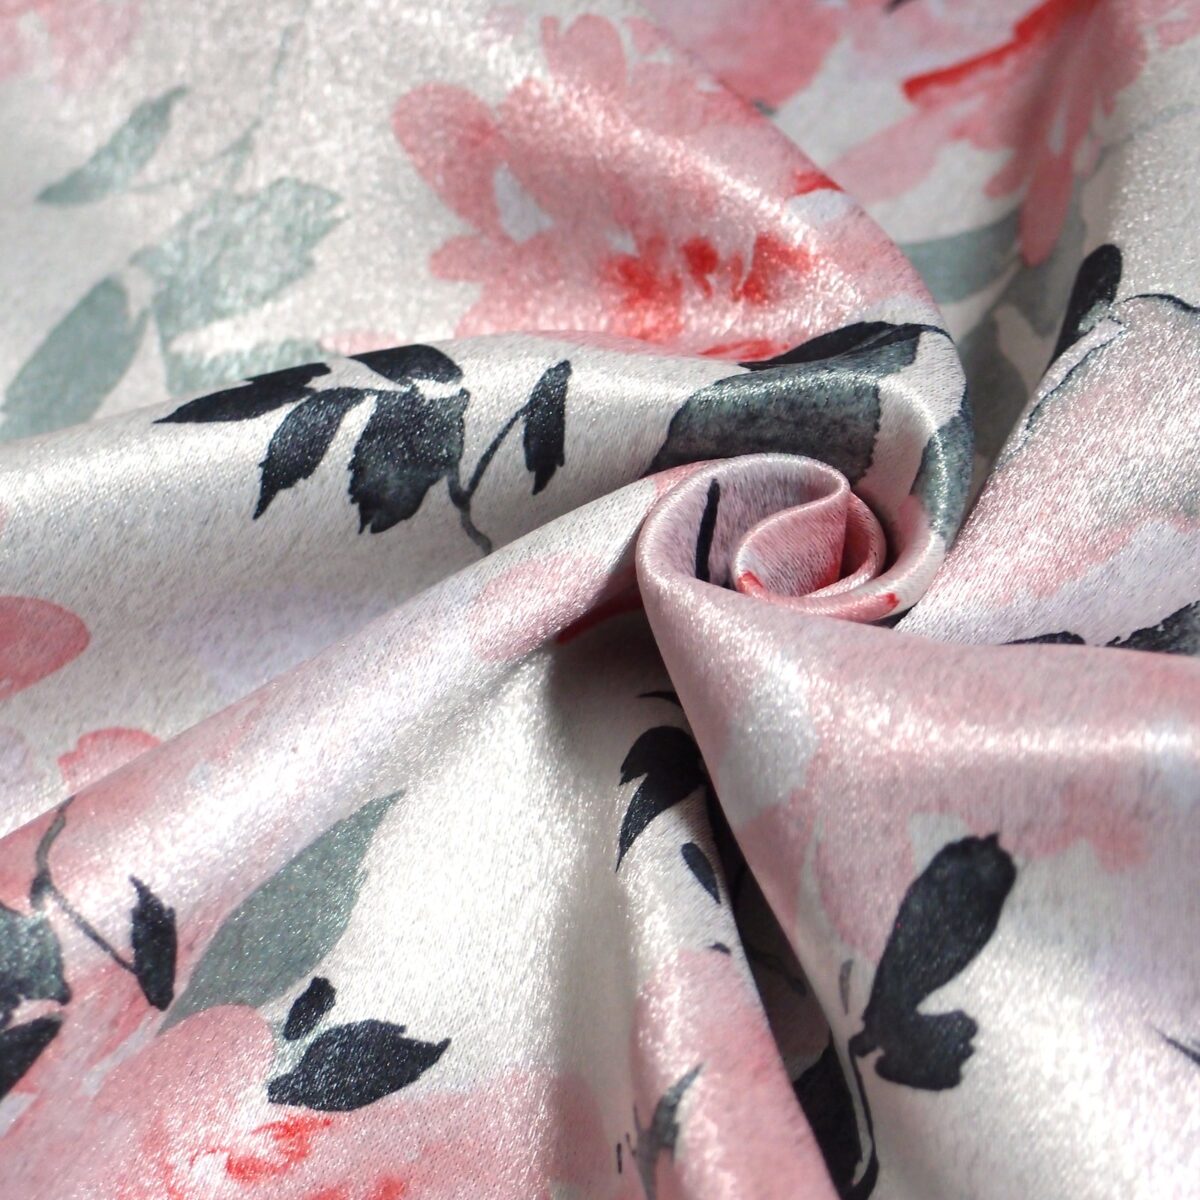 水彩風花柄 遮光カーテン マリーポール ピンク